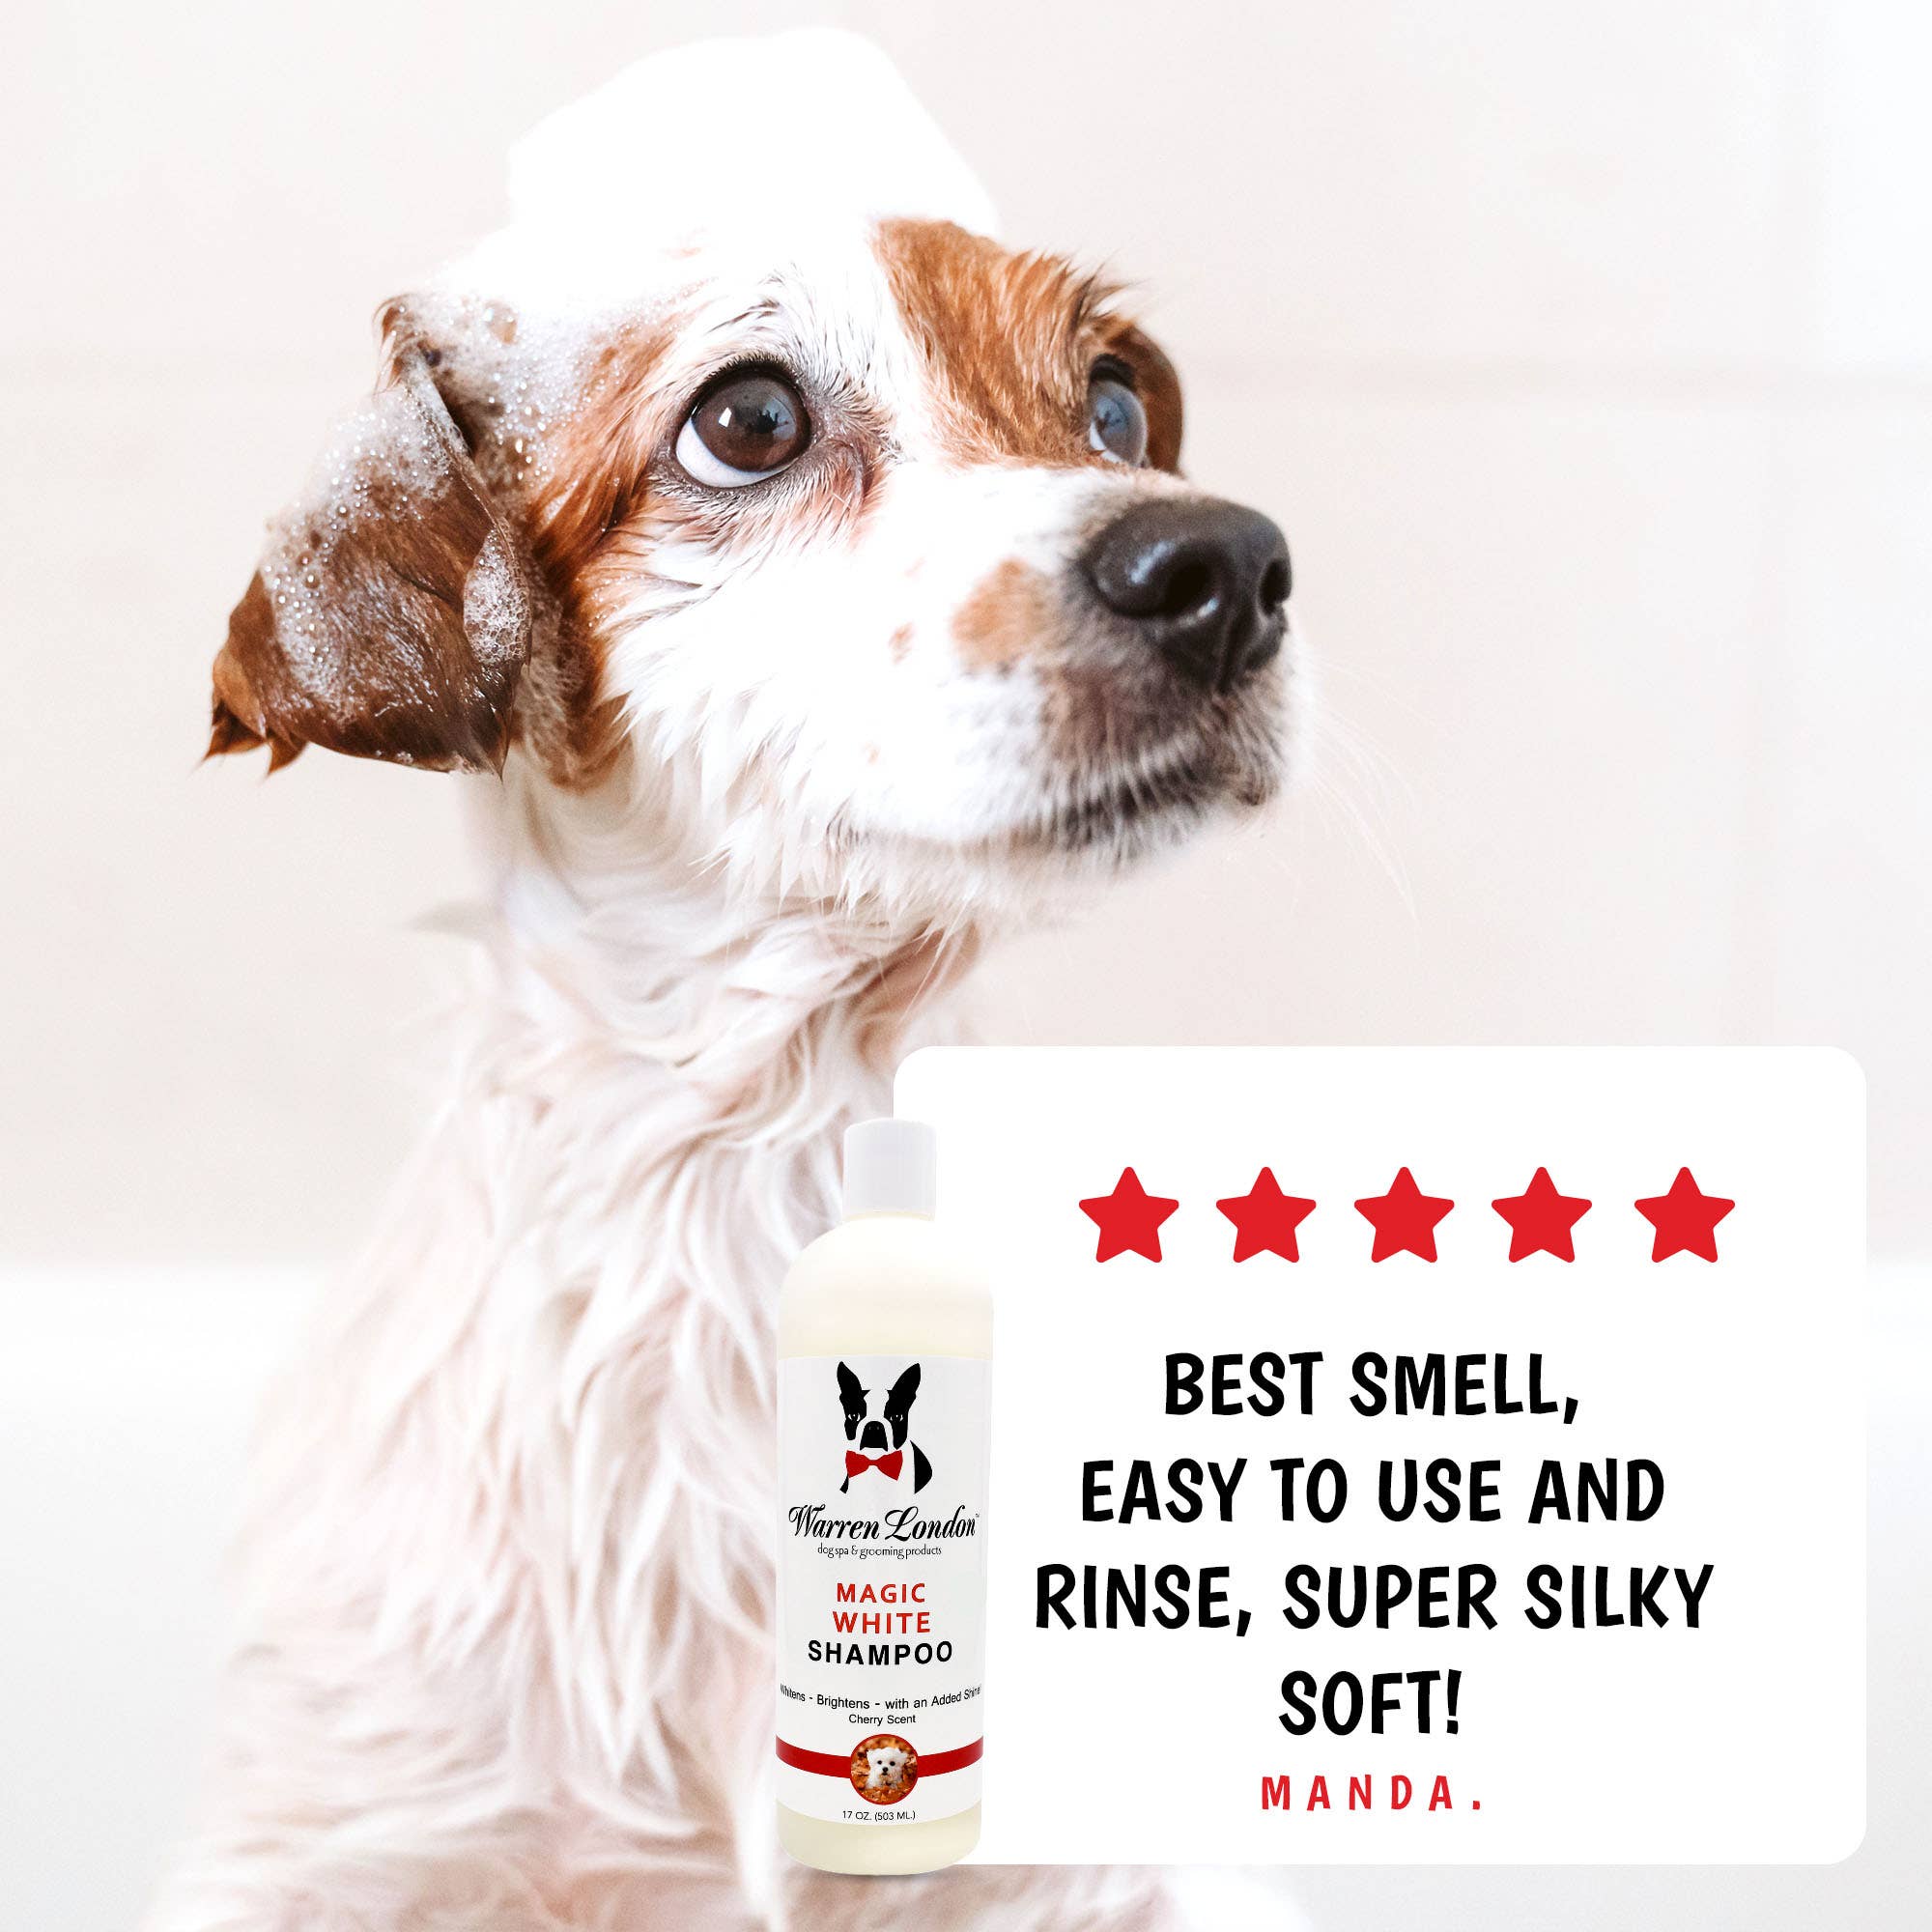 Warren London Dog Products - Shampoo: Magic White - 2 Sizes